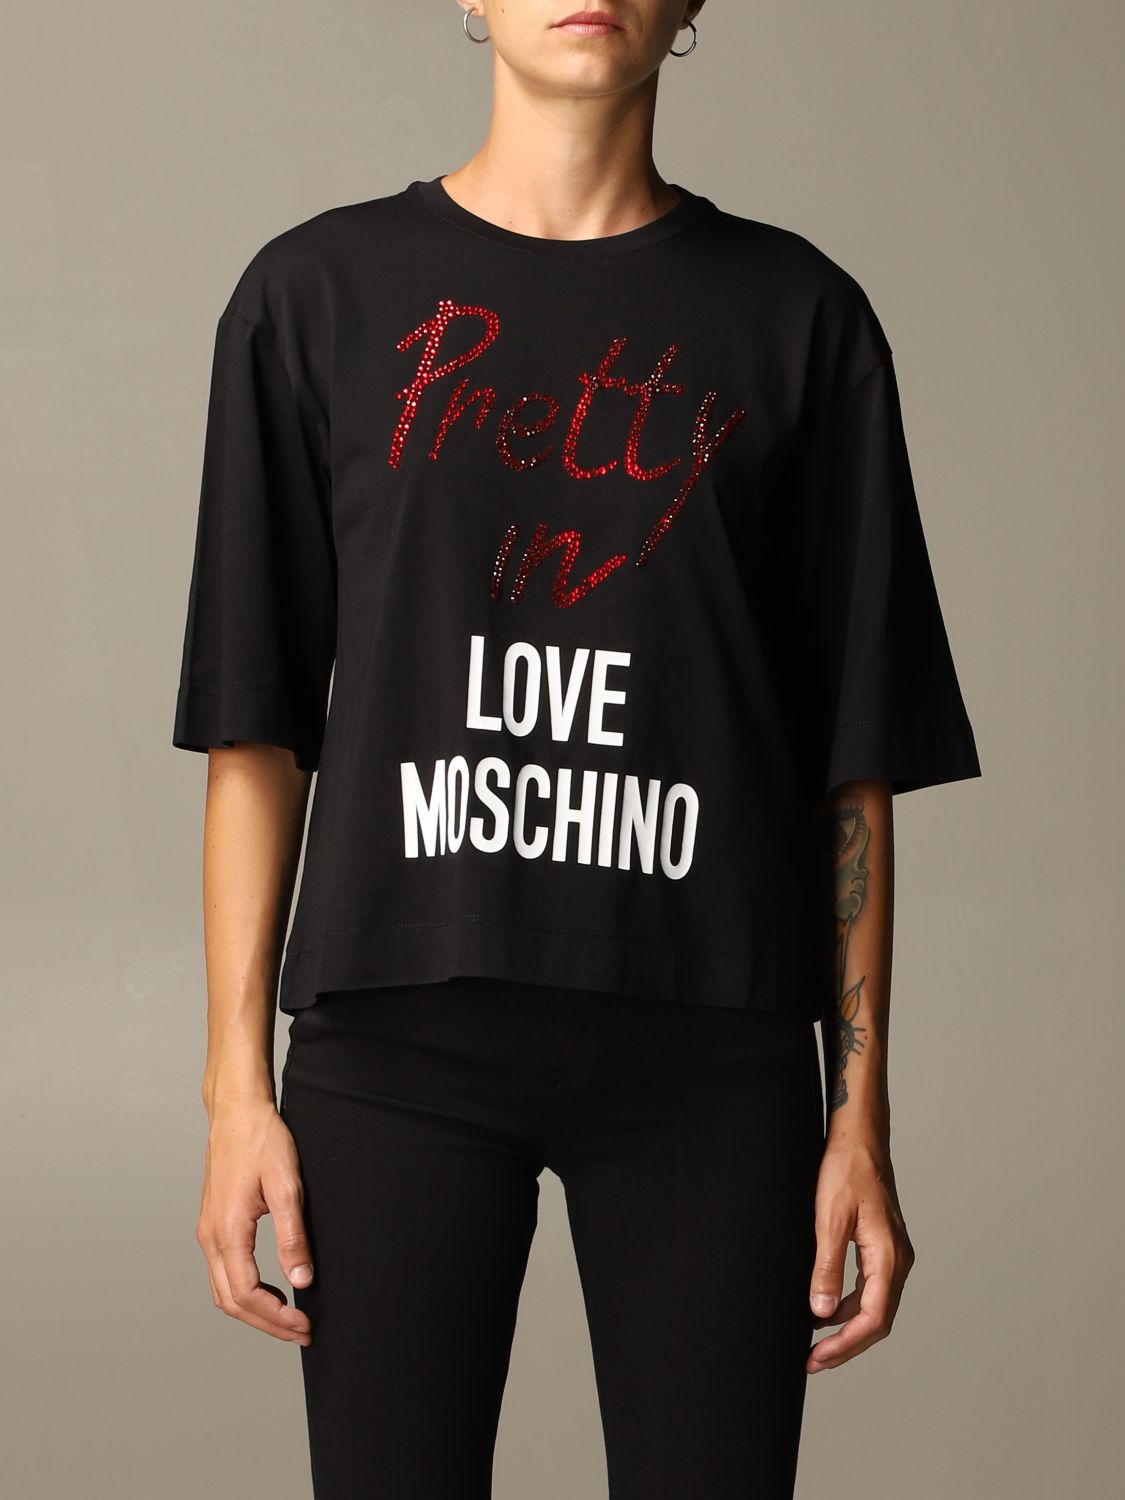 love moschino t shirt black